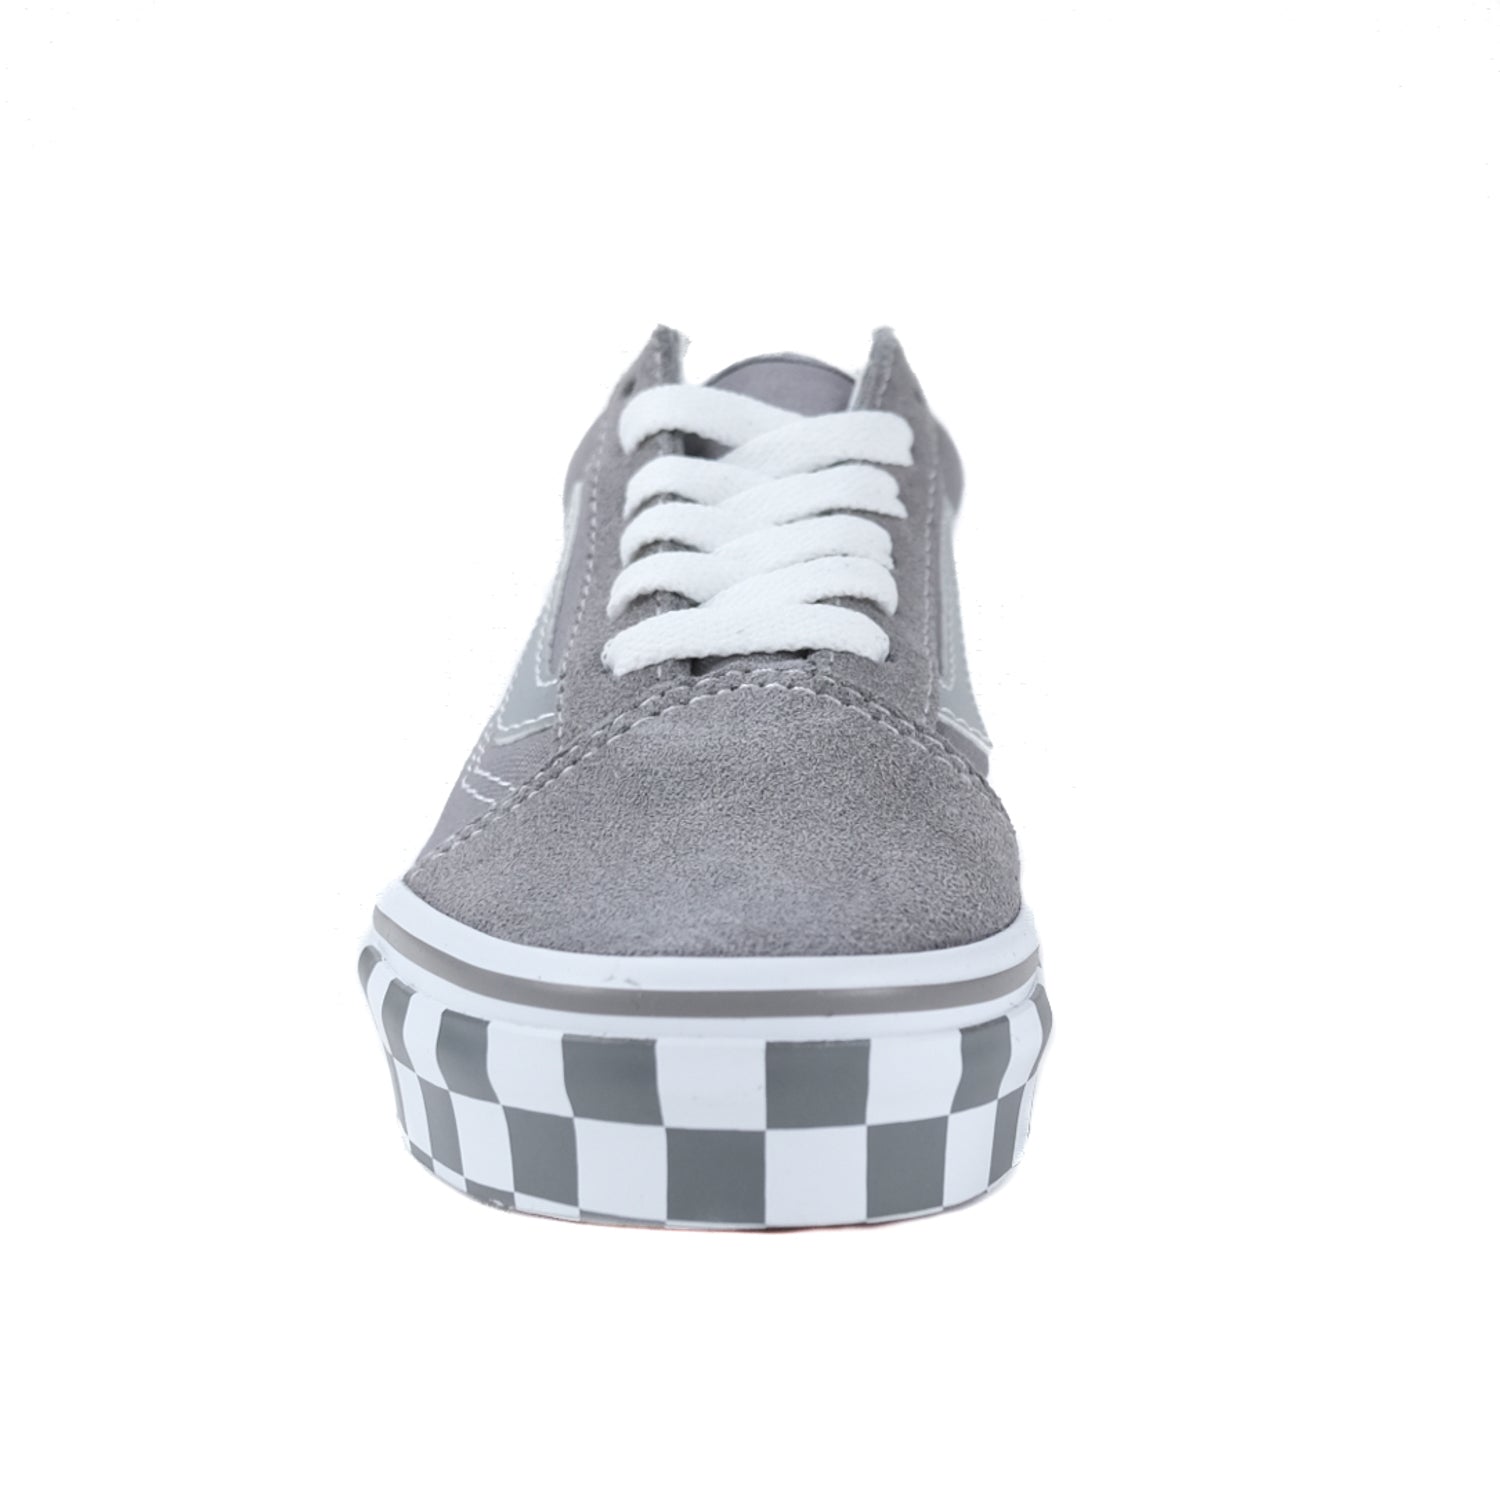 Vans Old Skool sneakers in white with navy side stripe